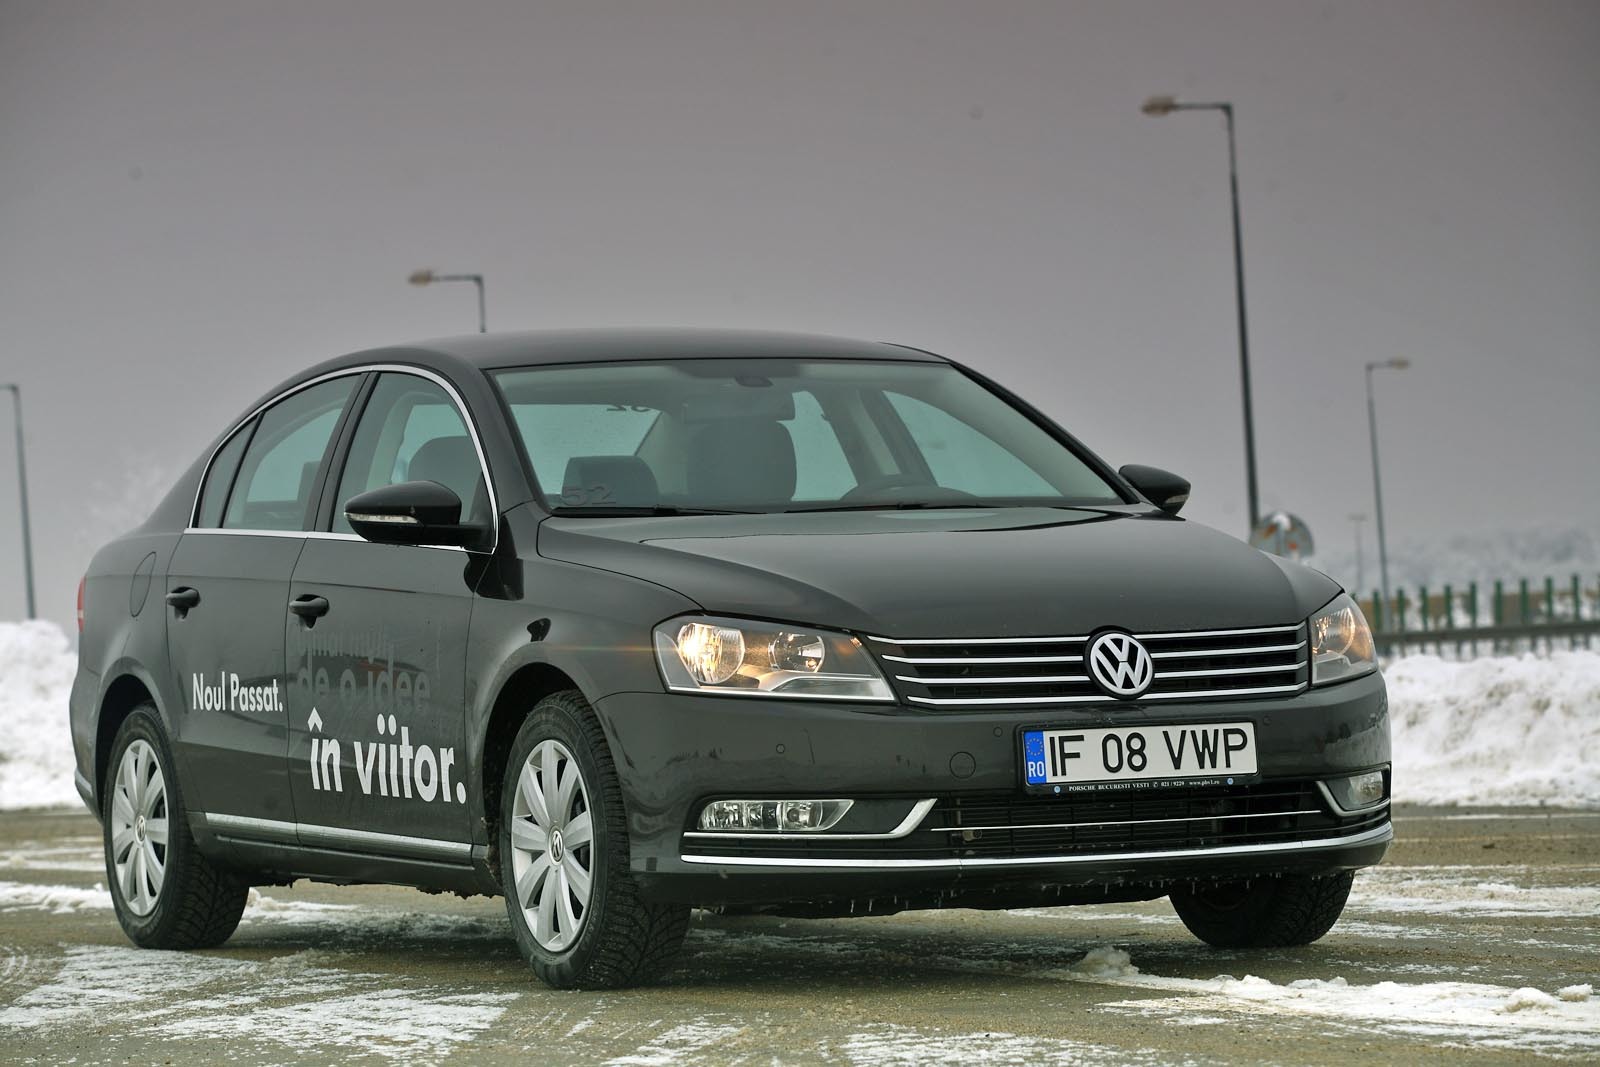 Spre deosebire de modelele frantuzesti, Volkswagen Passat facelift are o linie simplista